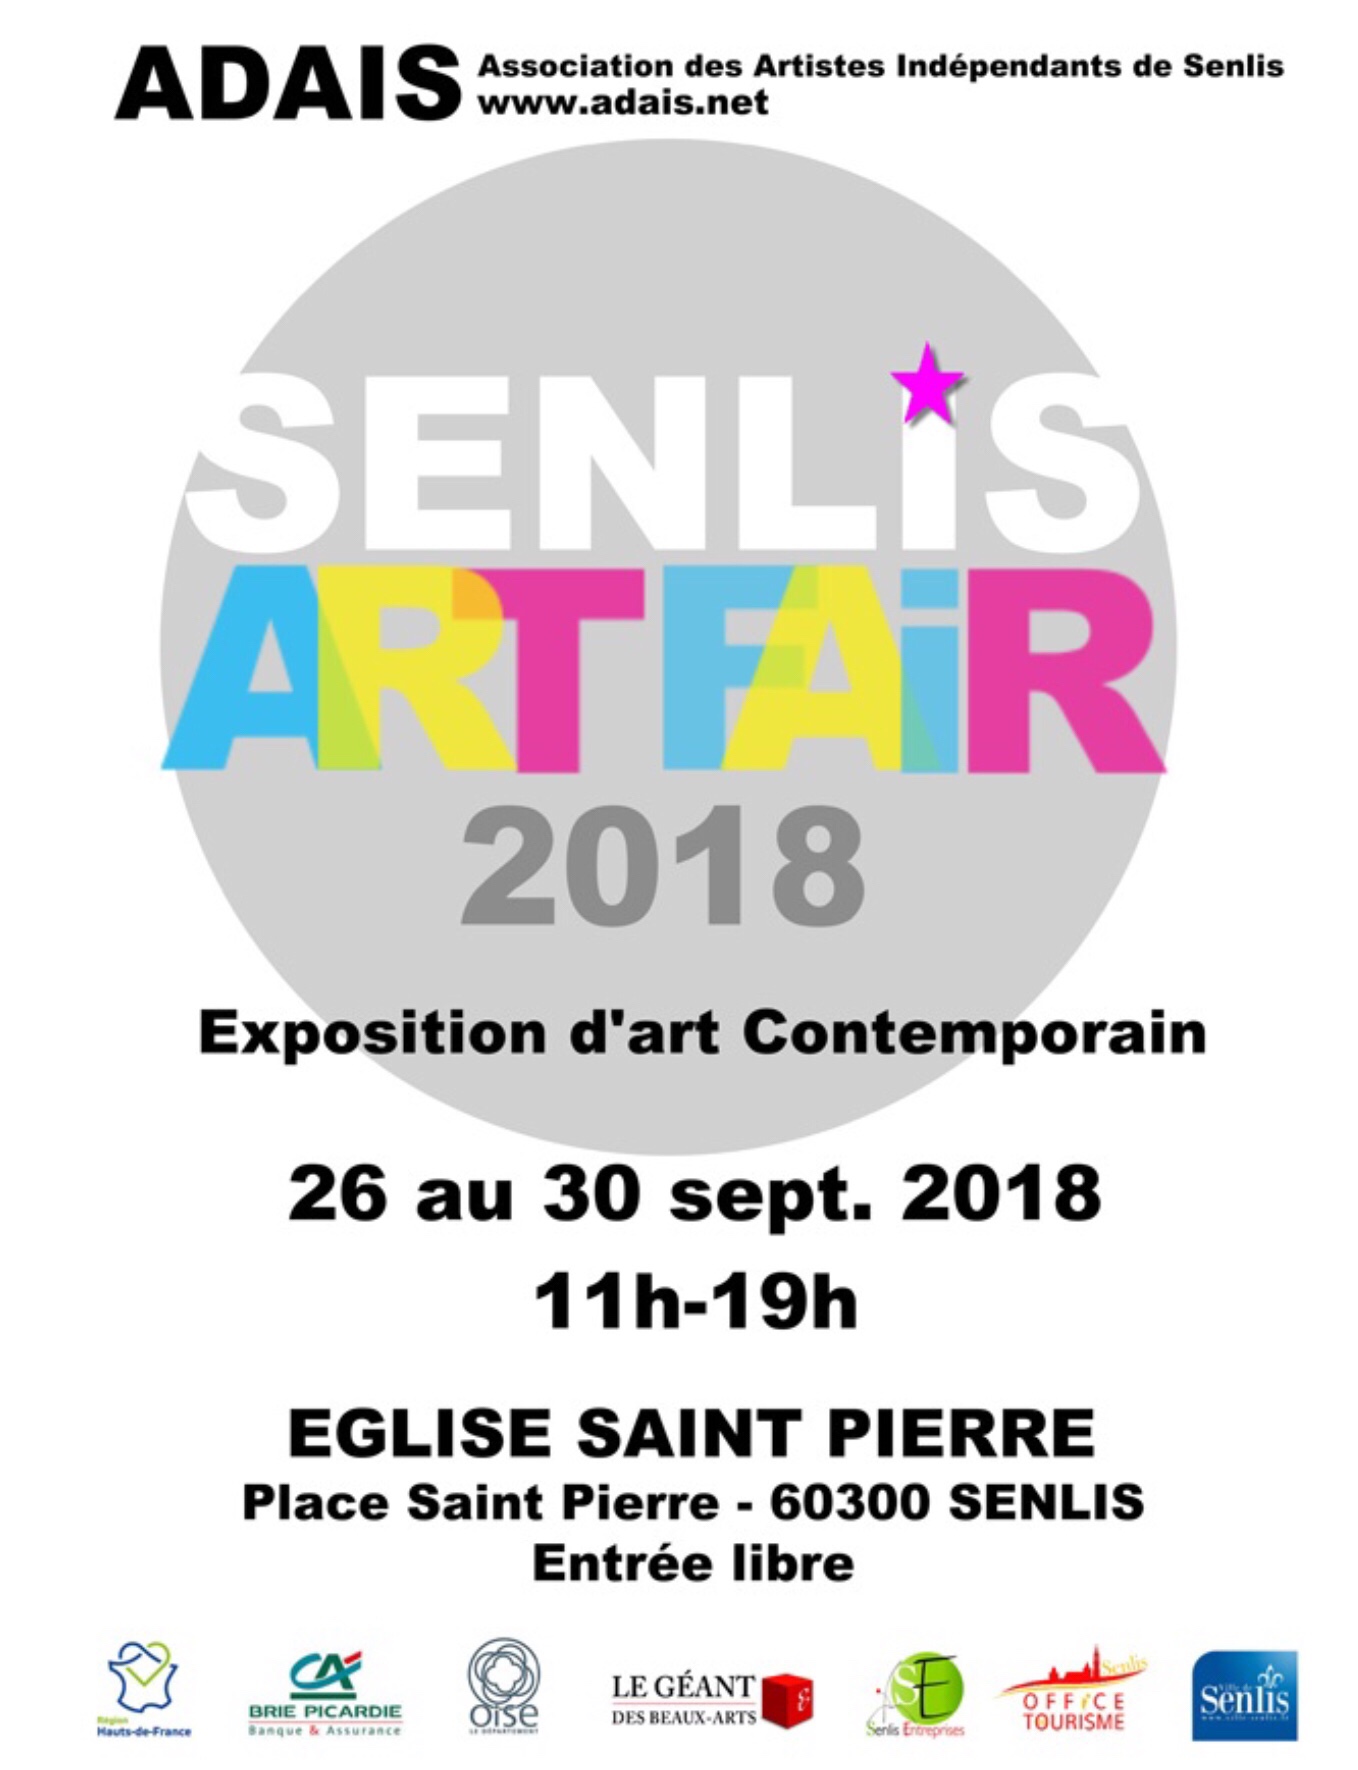 Senlis Art Fair 2018